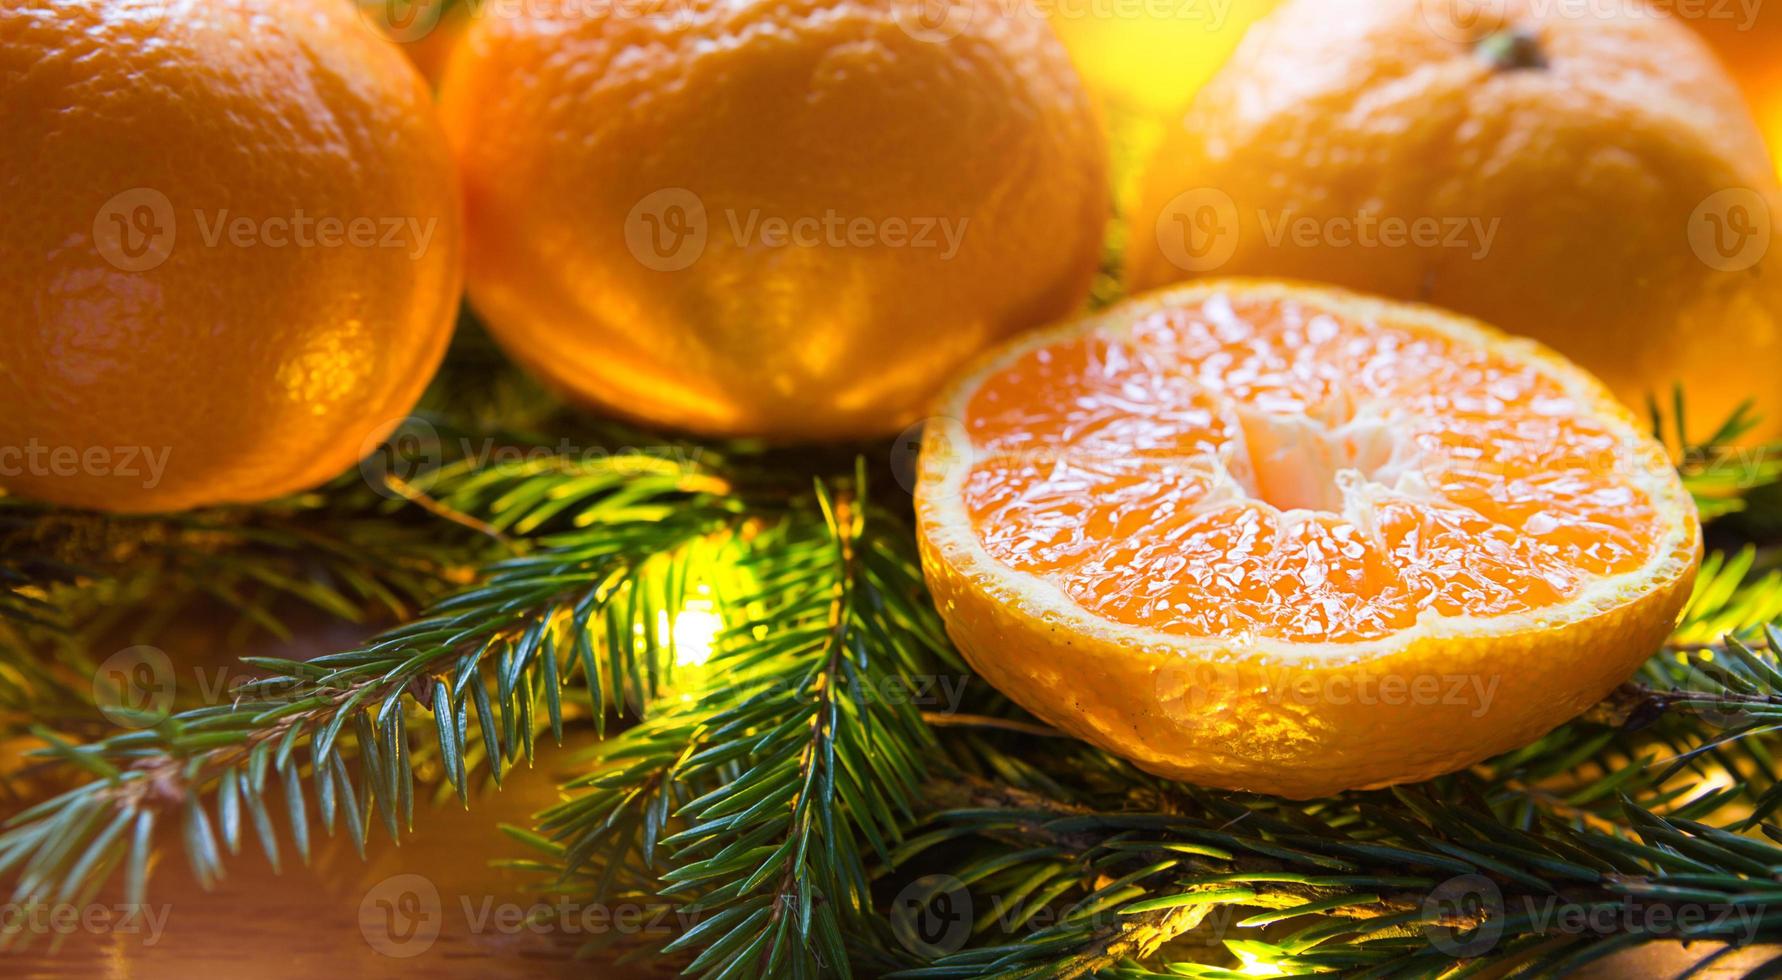 färska mandariner i kransljus, på grangrenar och glitter - nyårs ljusa bakgrund. hälften av en apelsin, citrus arom av semestern. jul, nyår. utrymme för text. foto